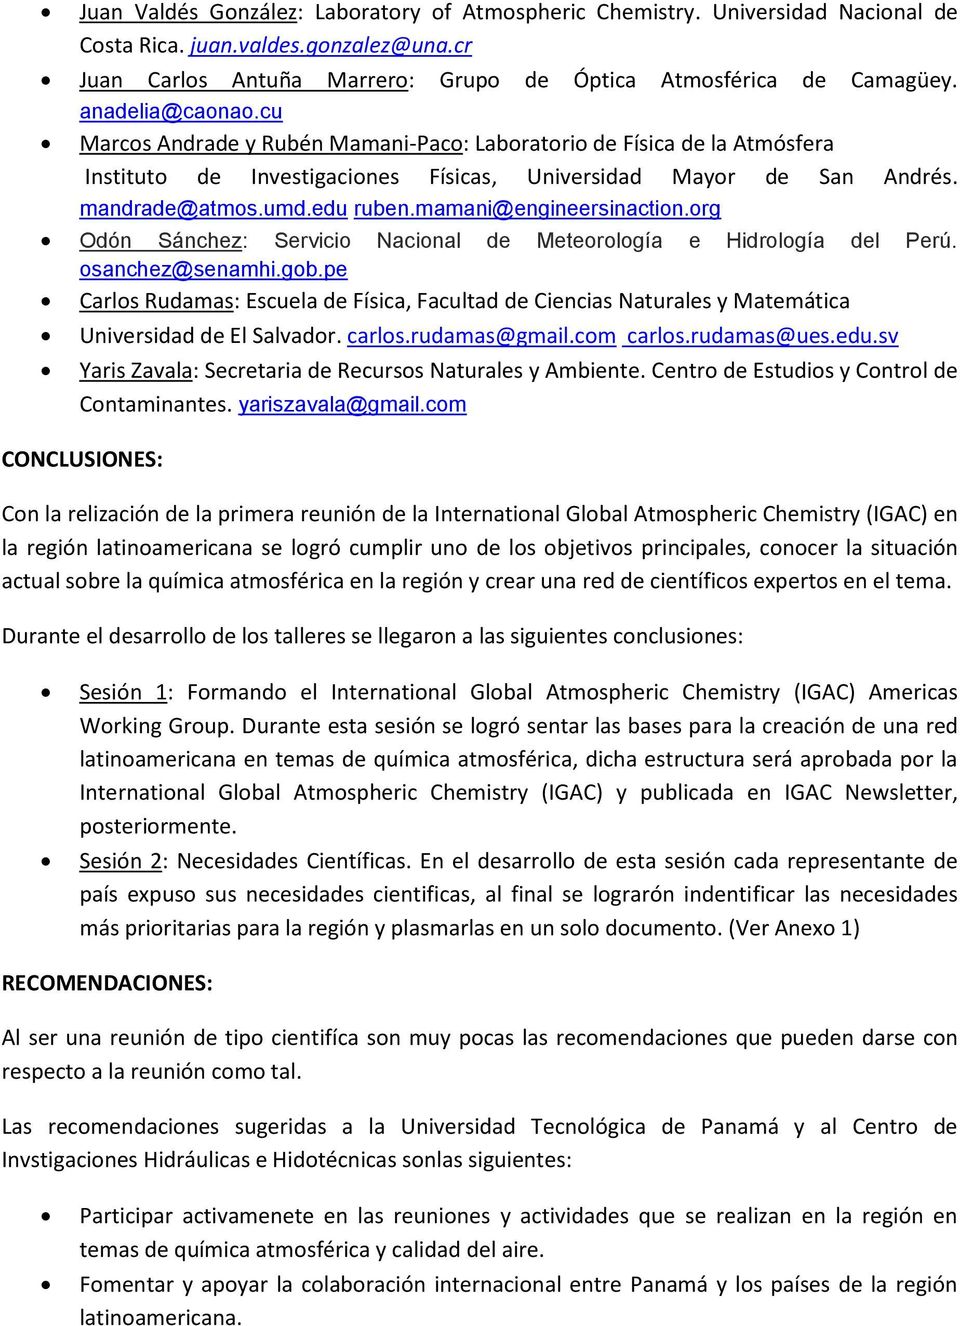 mamani@engineersinaction.org Odón Sánchez: Servicio Nacional de Meteorología e Hidrología del Perú. osanchez@senamhi.gob.